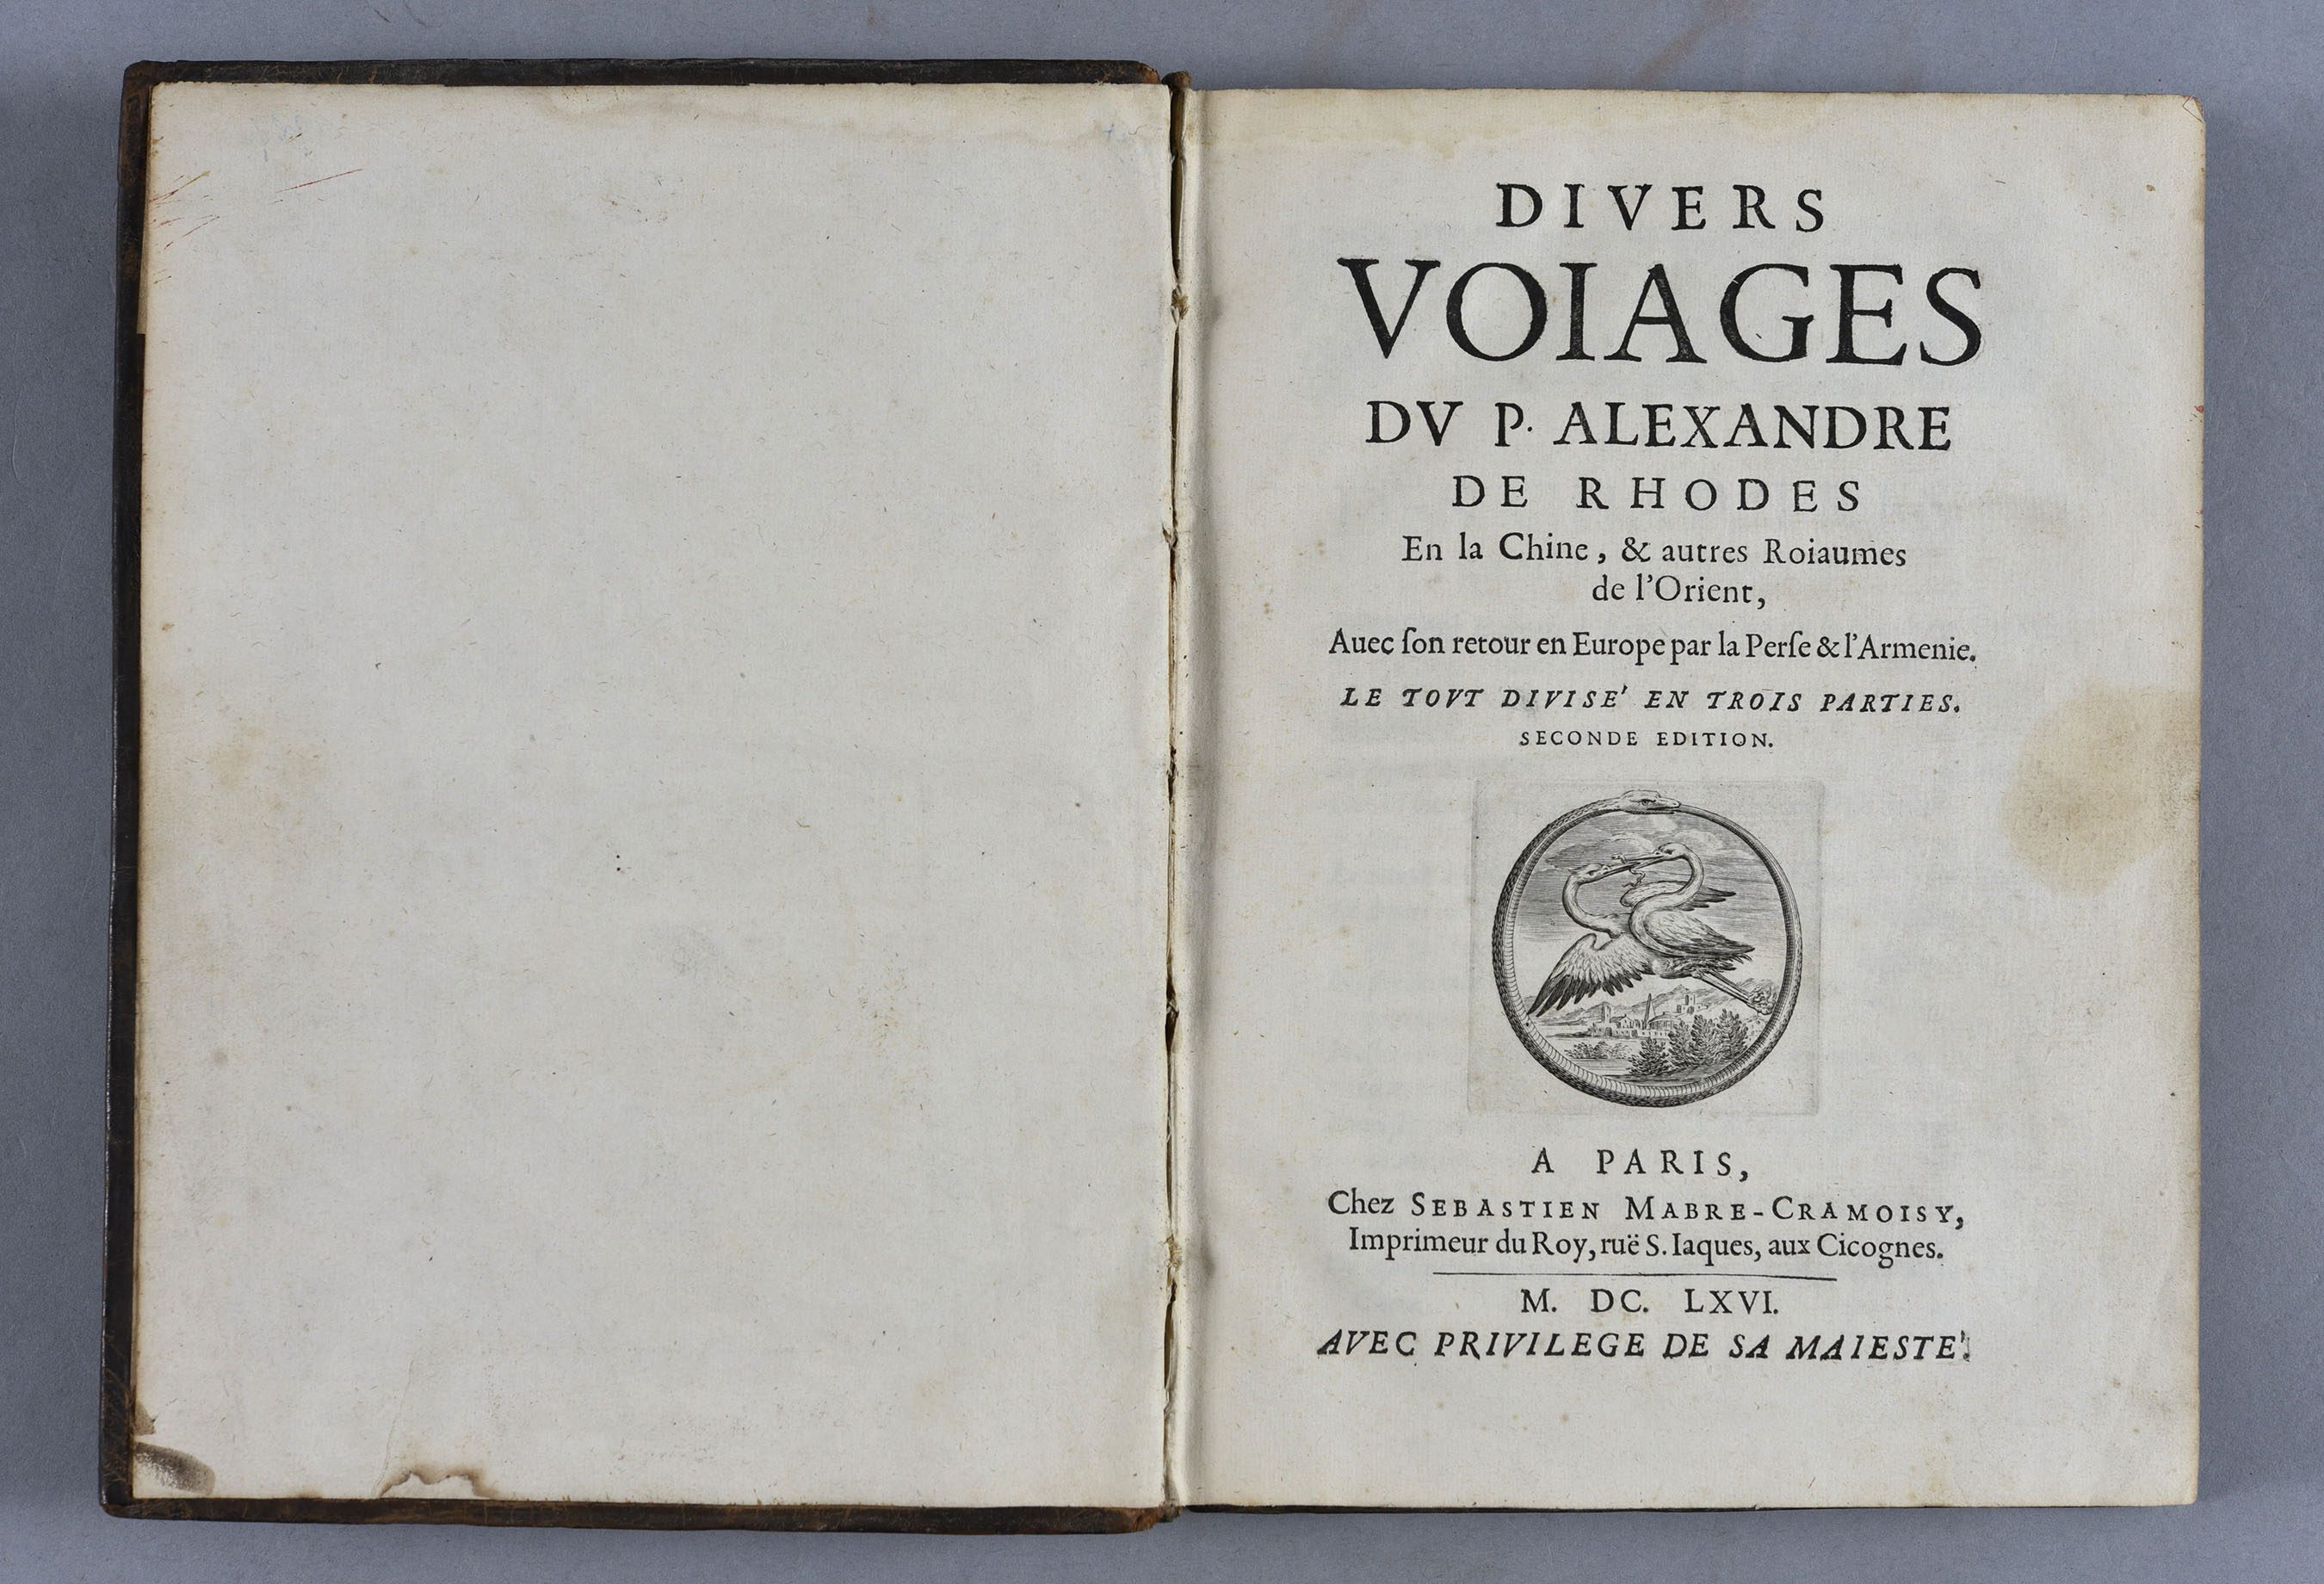 Rhodes (Alexandre de), Les divers voiages du P. A. de Rhodes, Paris, chez Sébastien Marbre-Cramoisy, 1666 